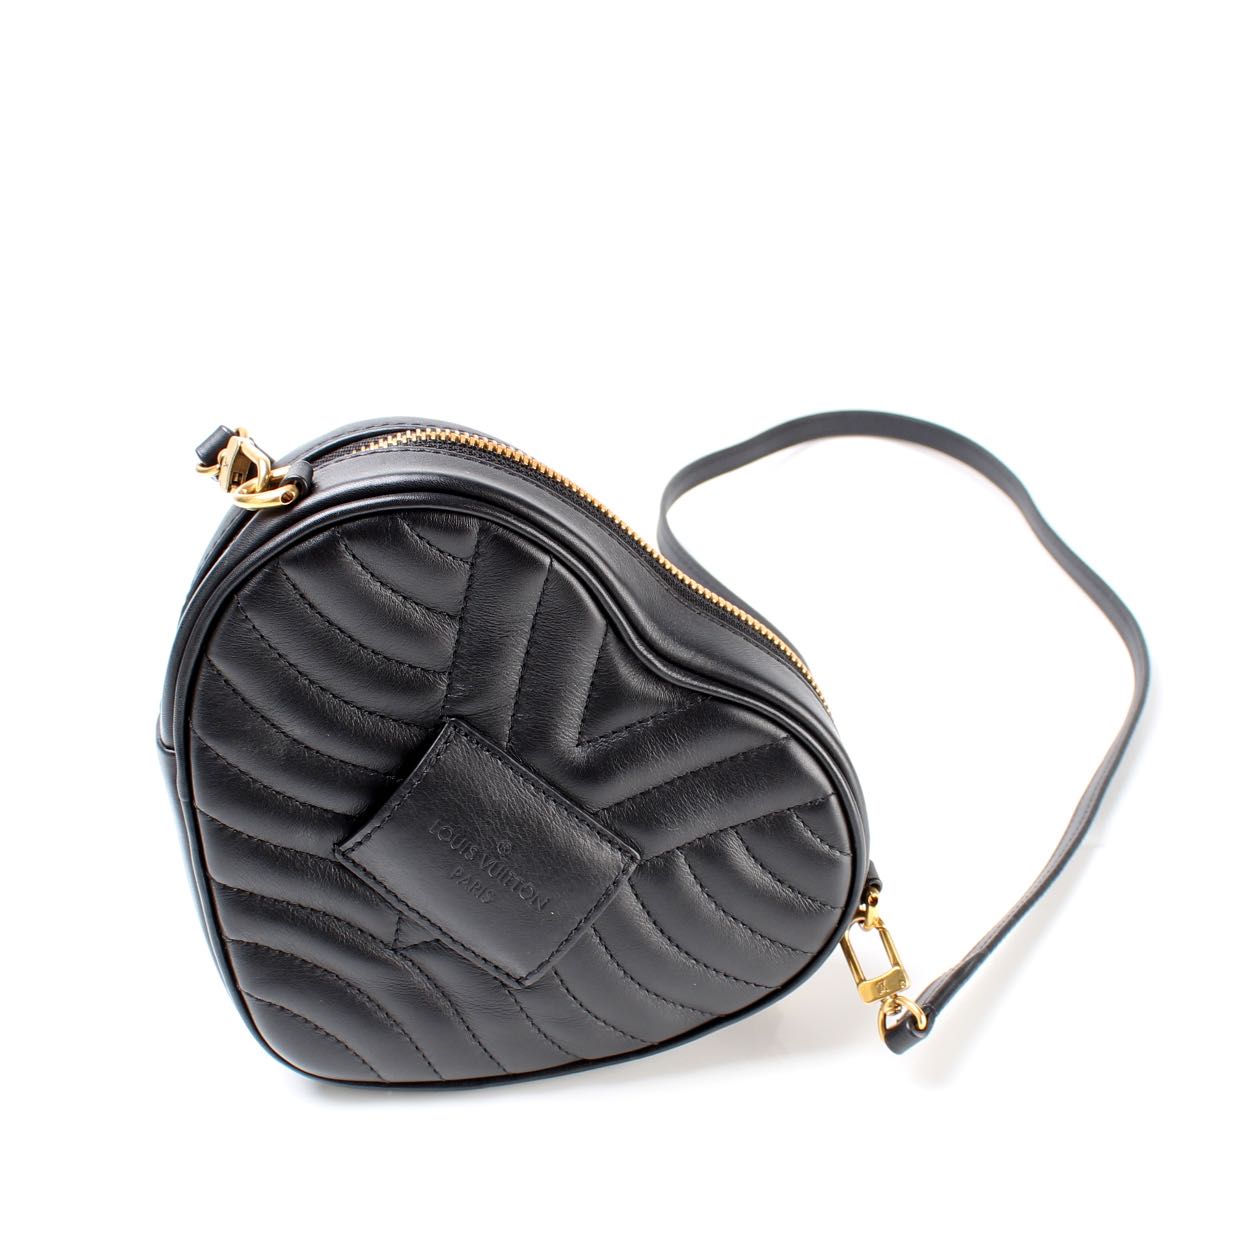 Louis Vuitton New Wave Heart Shoulder Bag